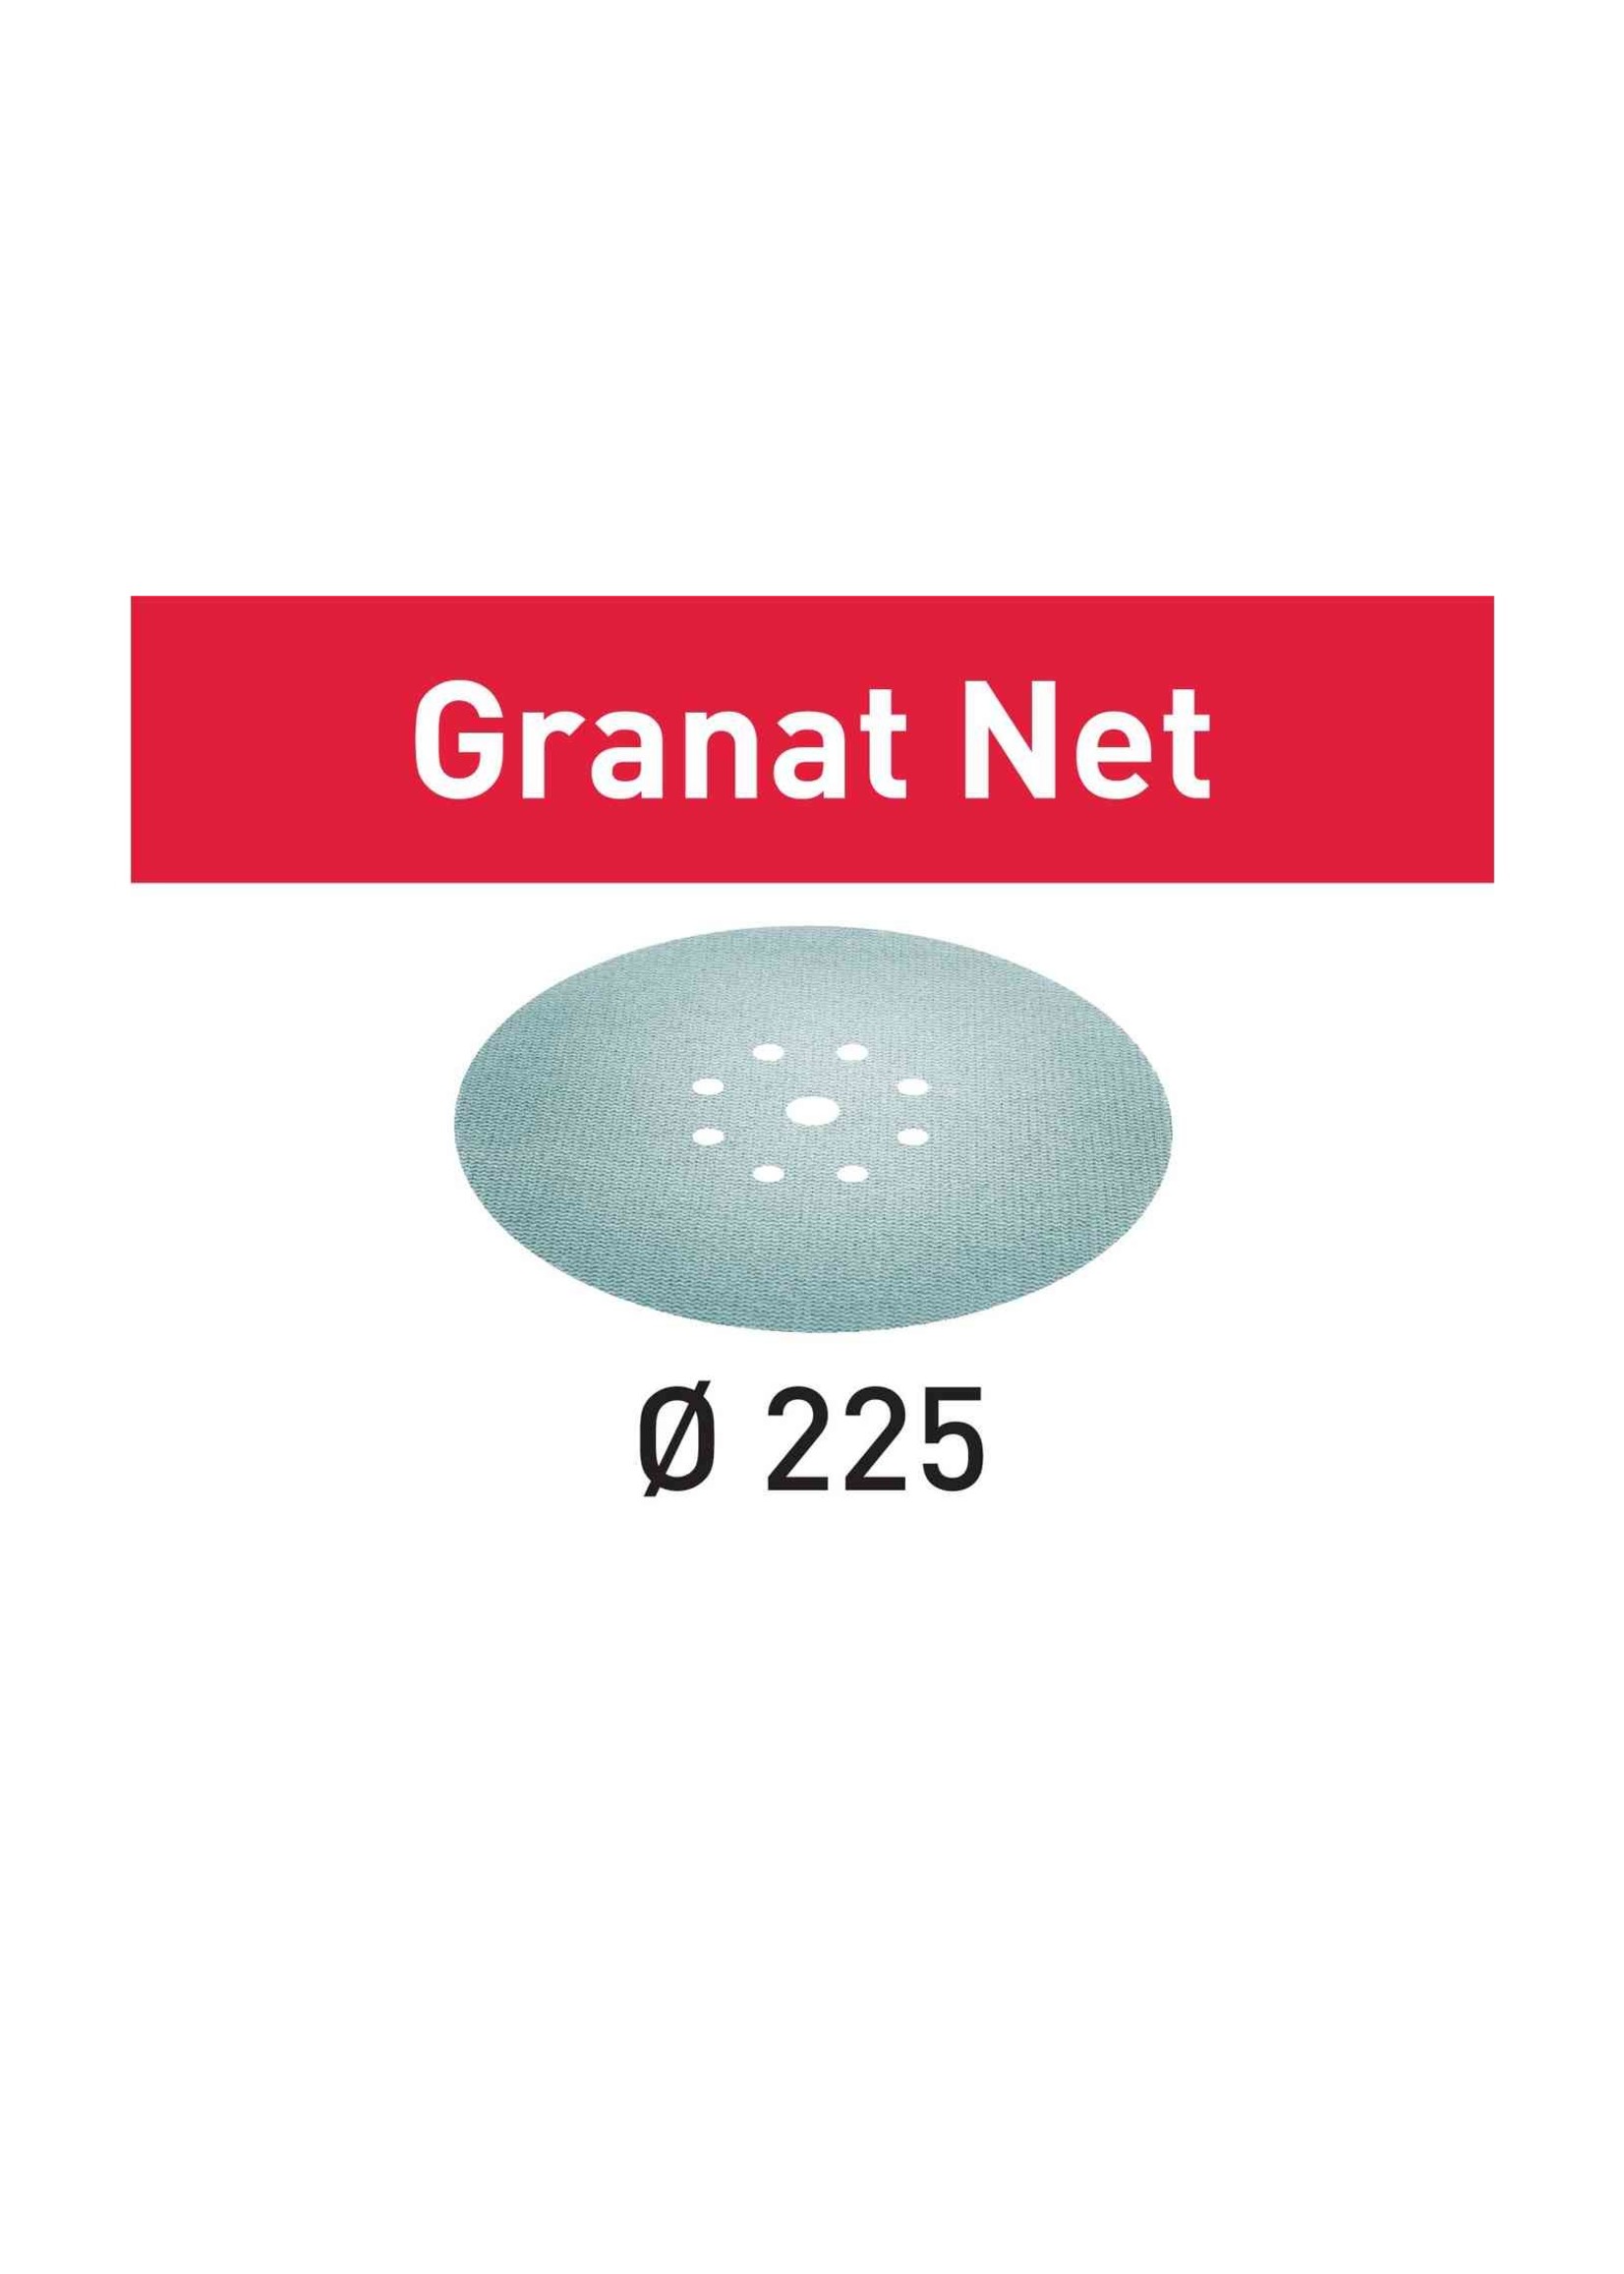 Festool 203315 sanding discs   STF D225 P150 GR NET/25